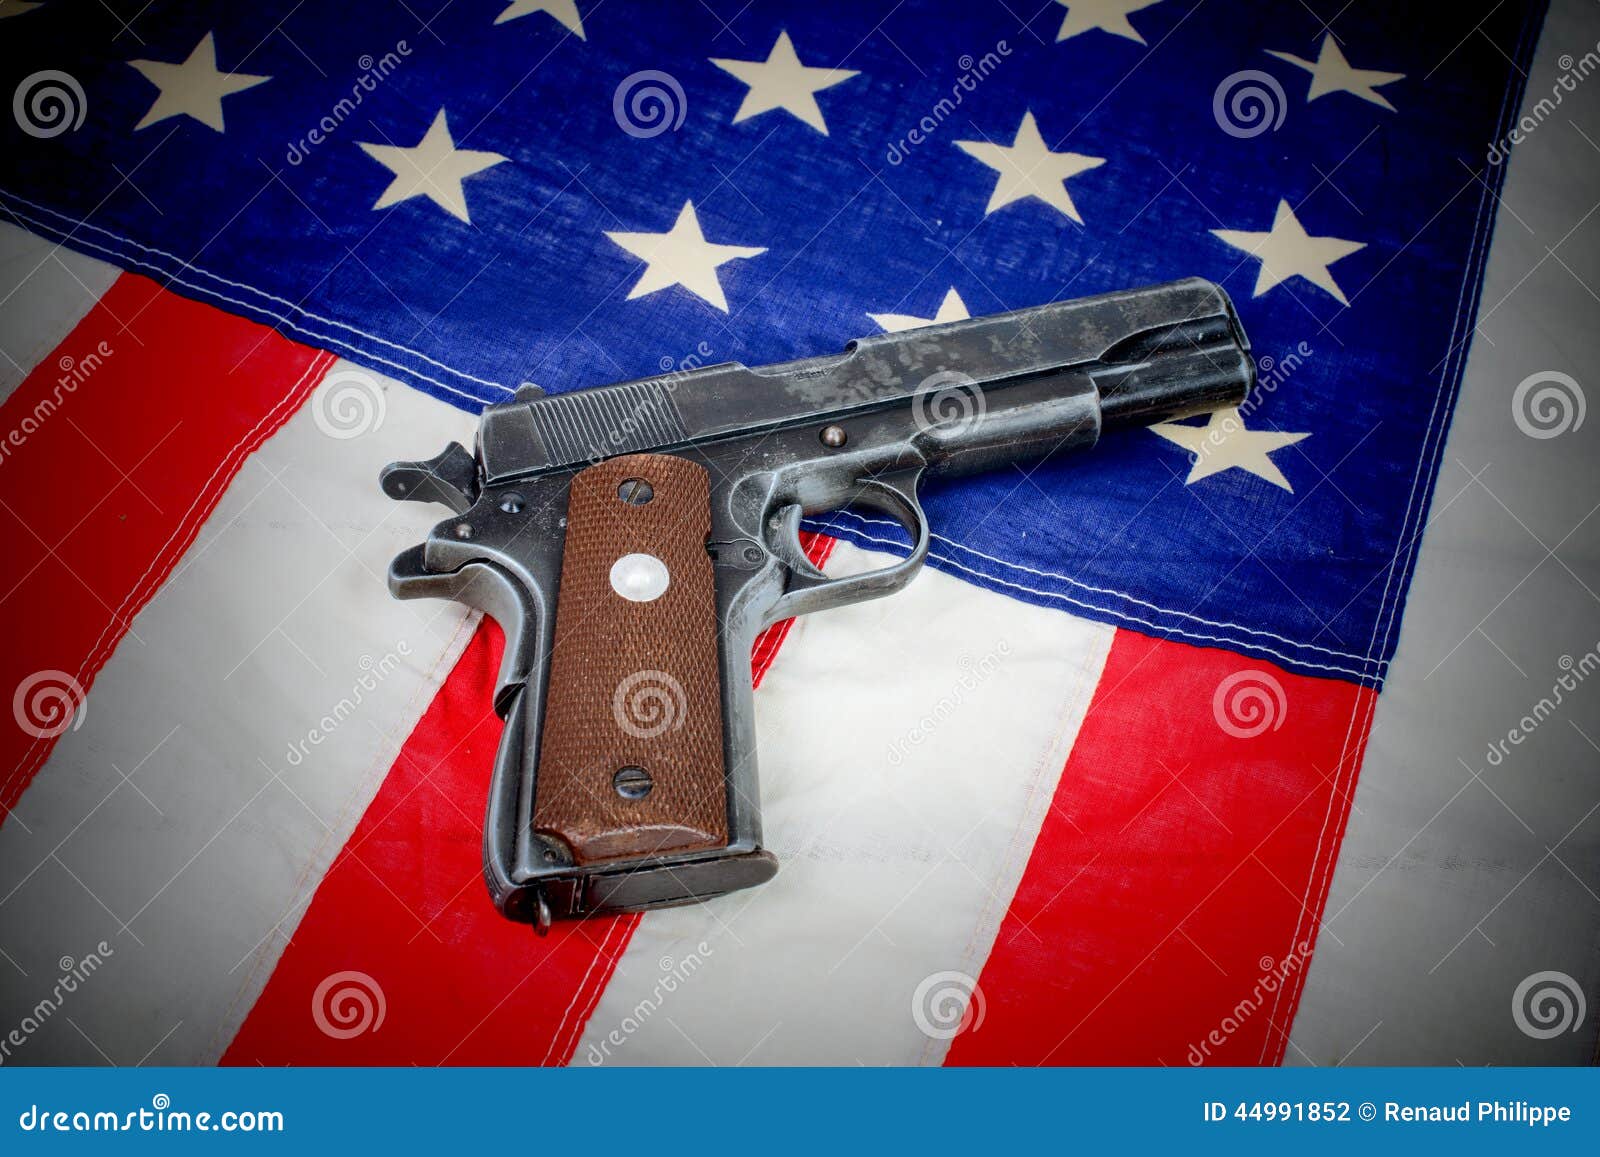 Arme à Feu étendue Sur Le Drapeau Américain Photo stock - Image du